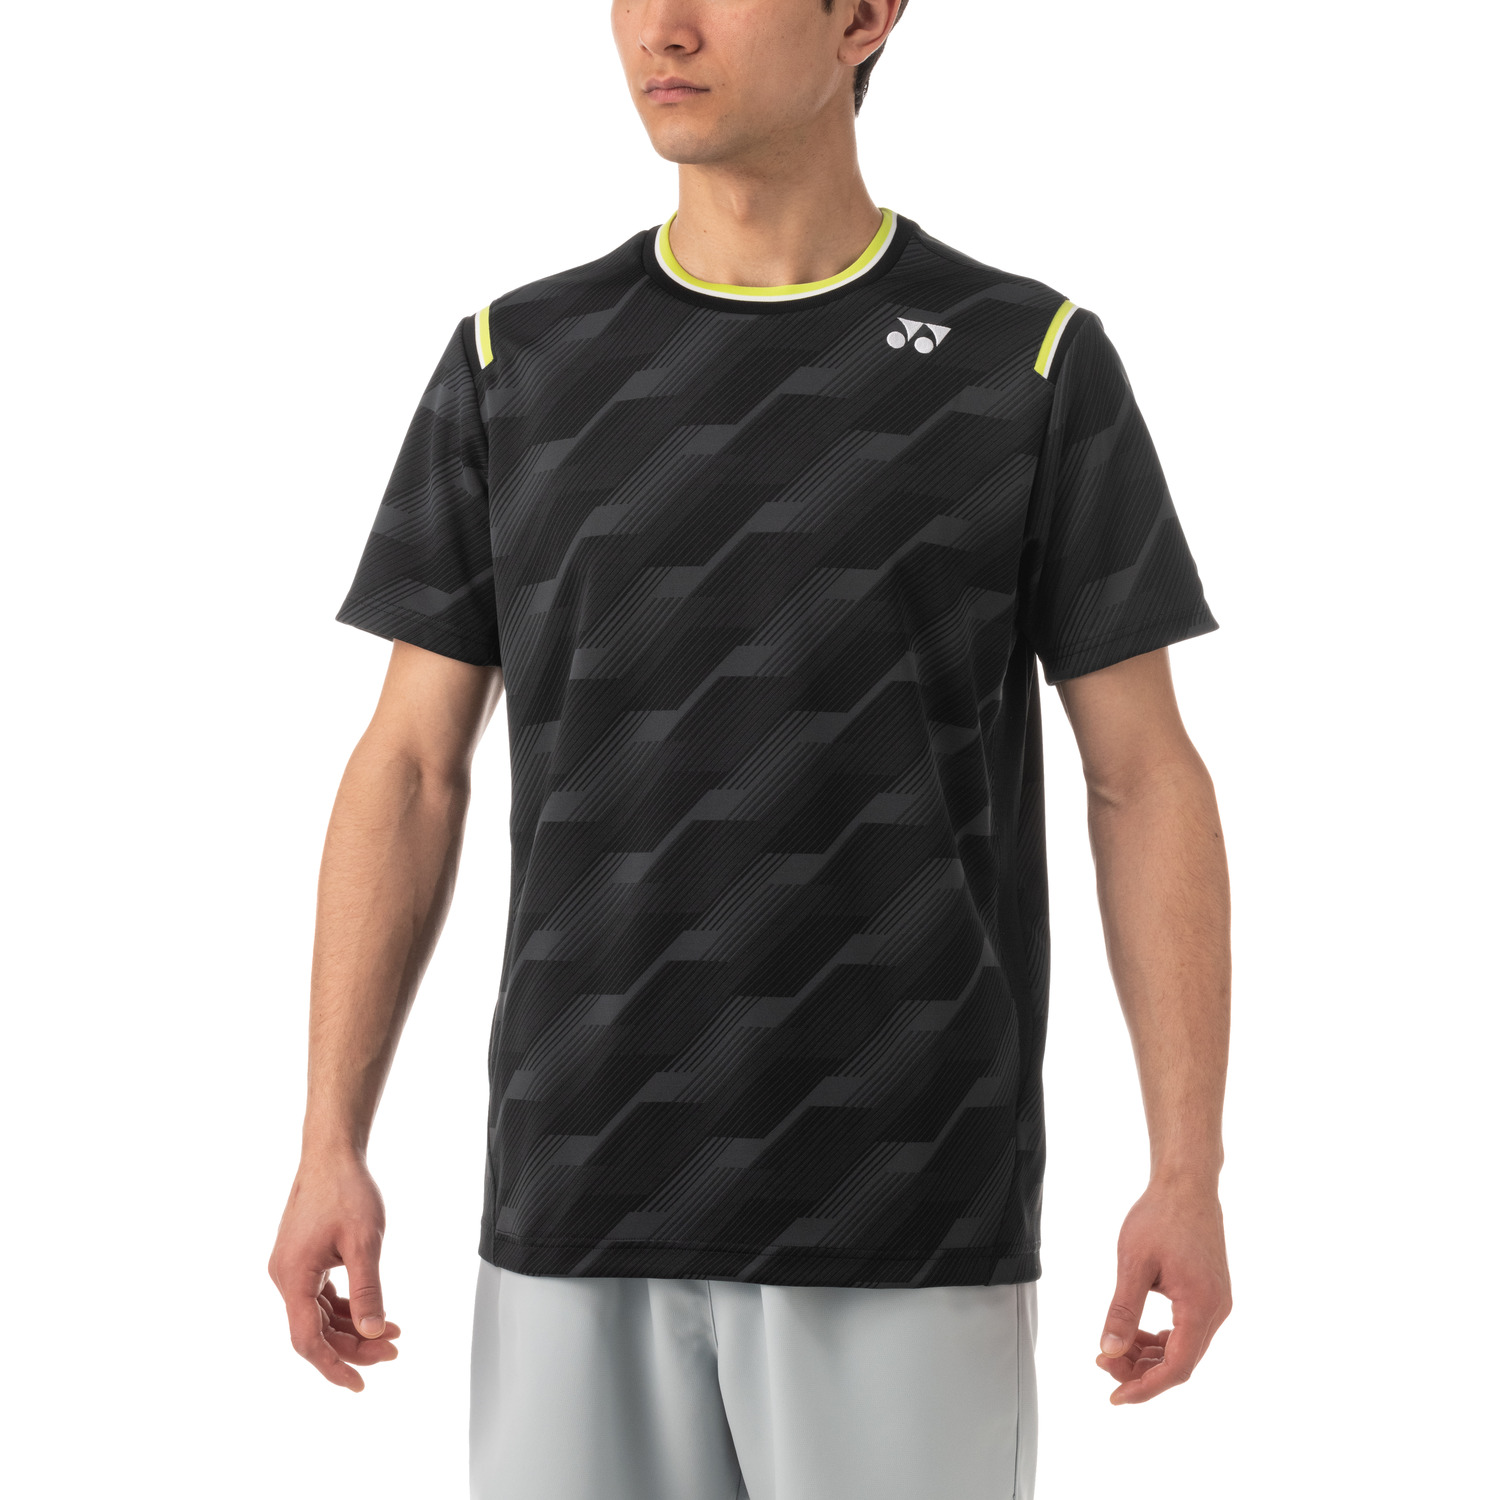 魅力的な価格 ヨネックス YONEX テニスウェア ユニセックス ゲームシャツ フィットスタイル 10462 2022SS 即日出荷 